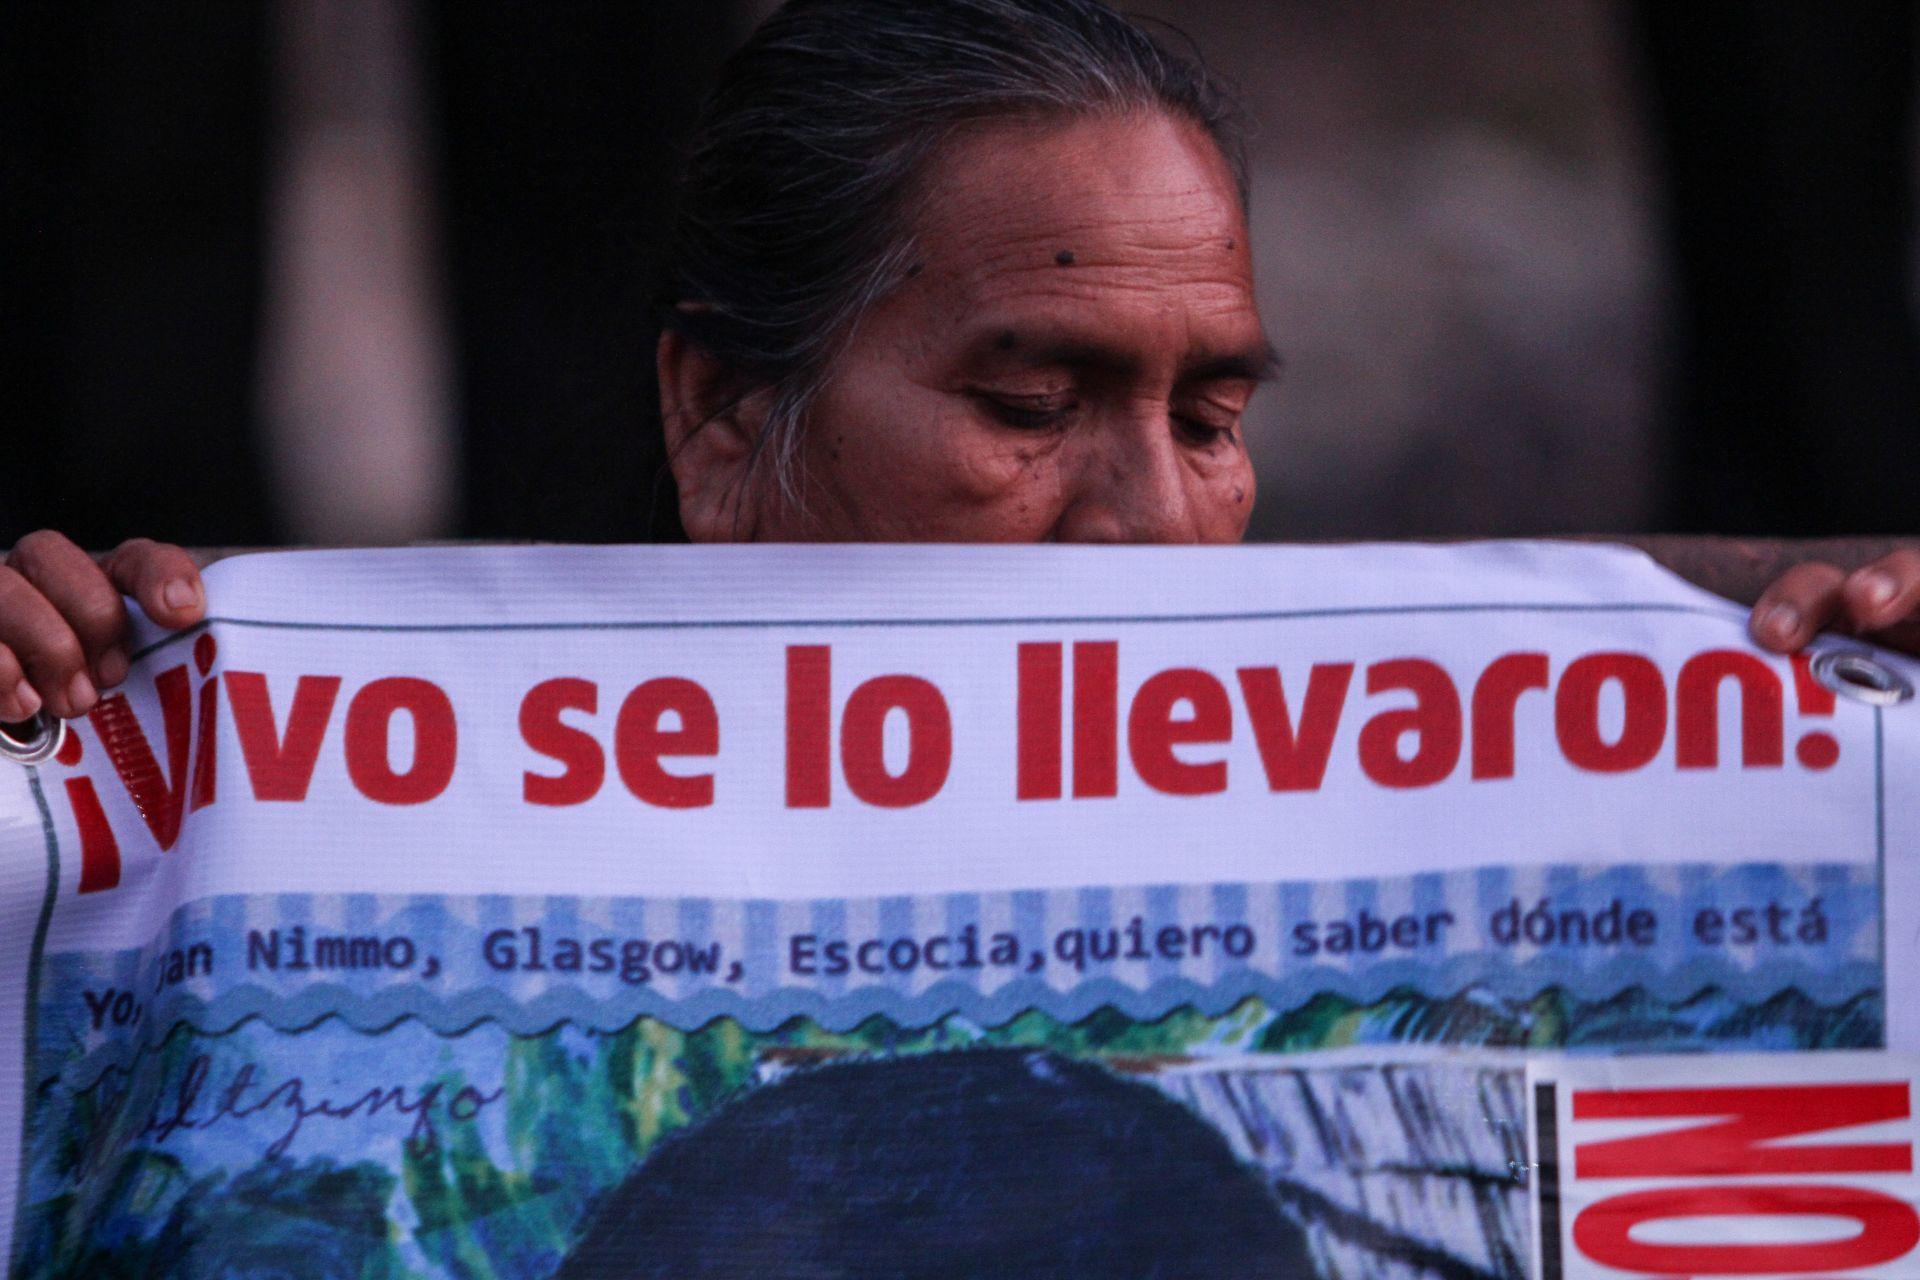 “Nos pueden matar o desaparecer”: Colectivo de búsqueda en Guanajuato denuncia amenazas